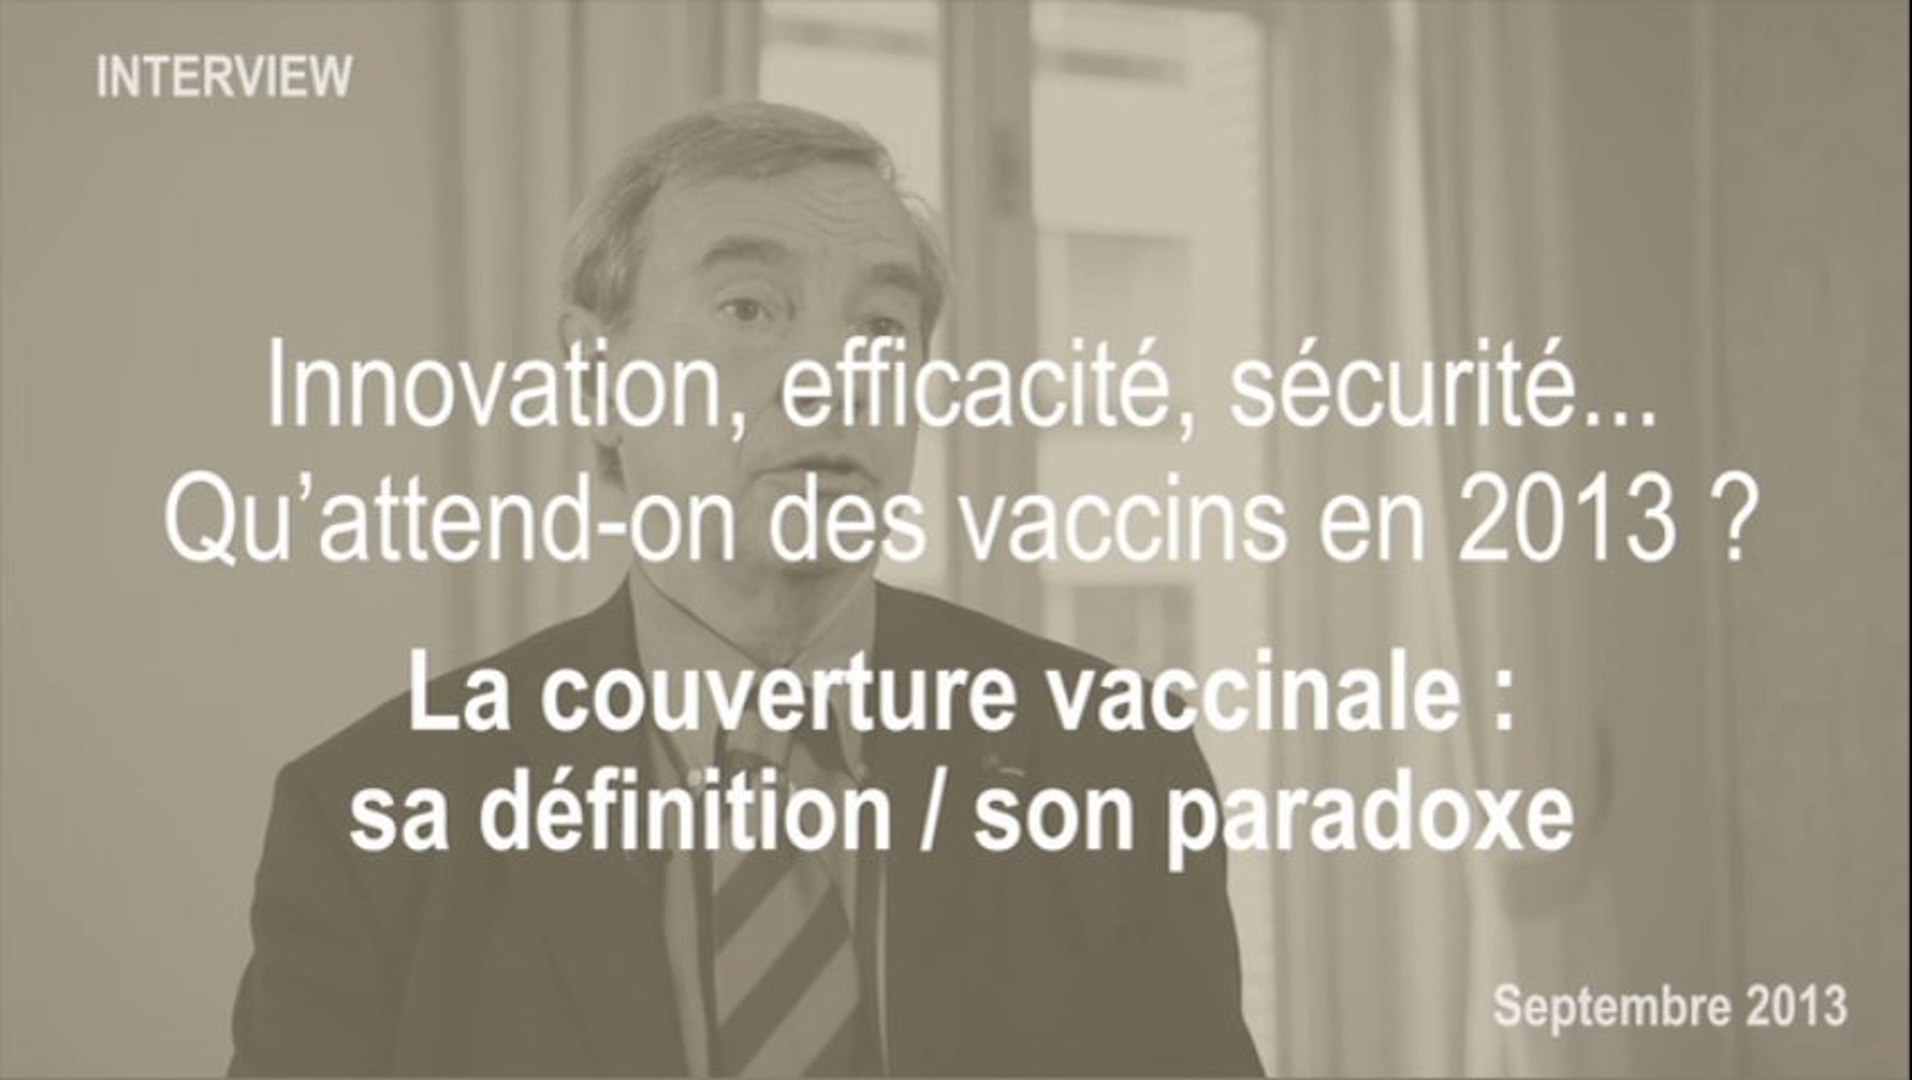 La couverture vaccinale : sa définition / son paradoxe - Vidéo Dailymotion